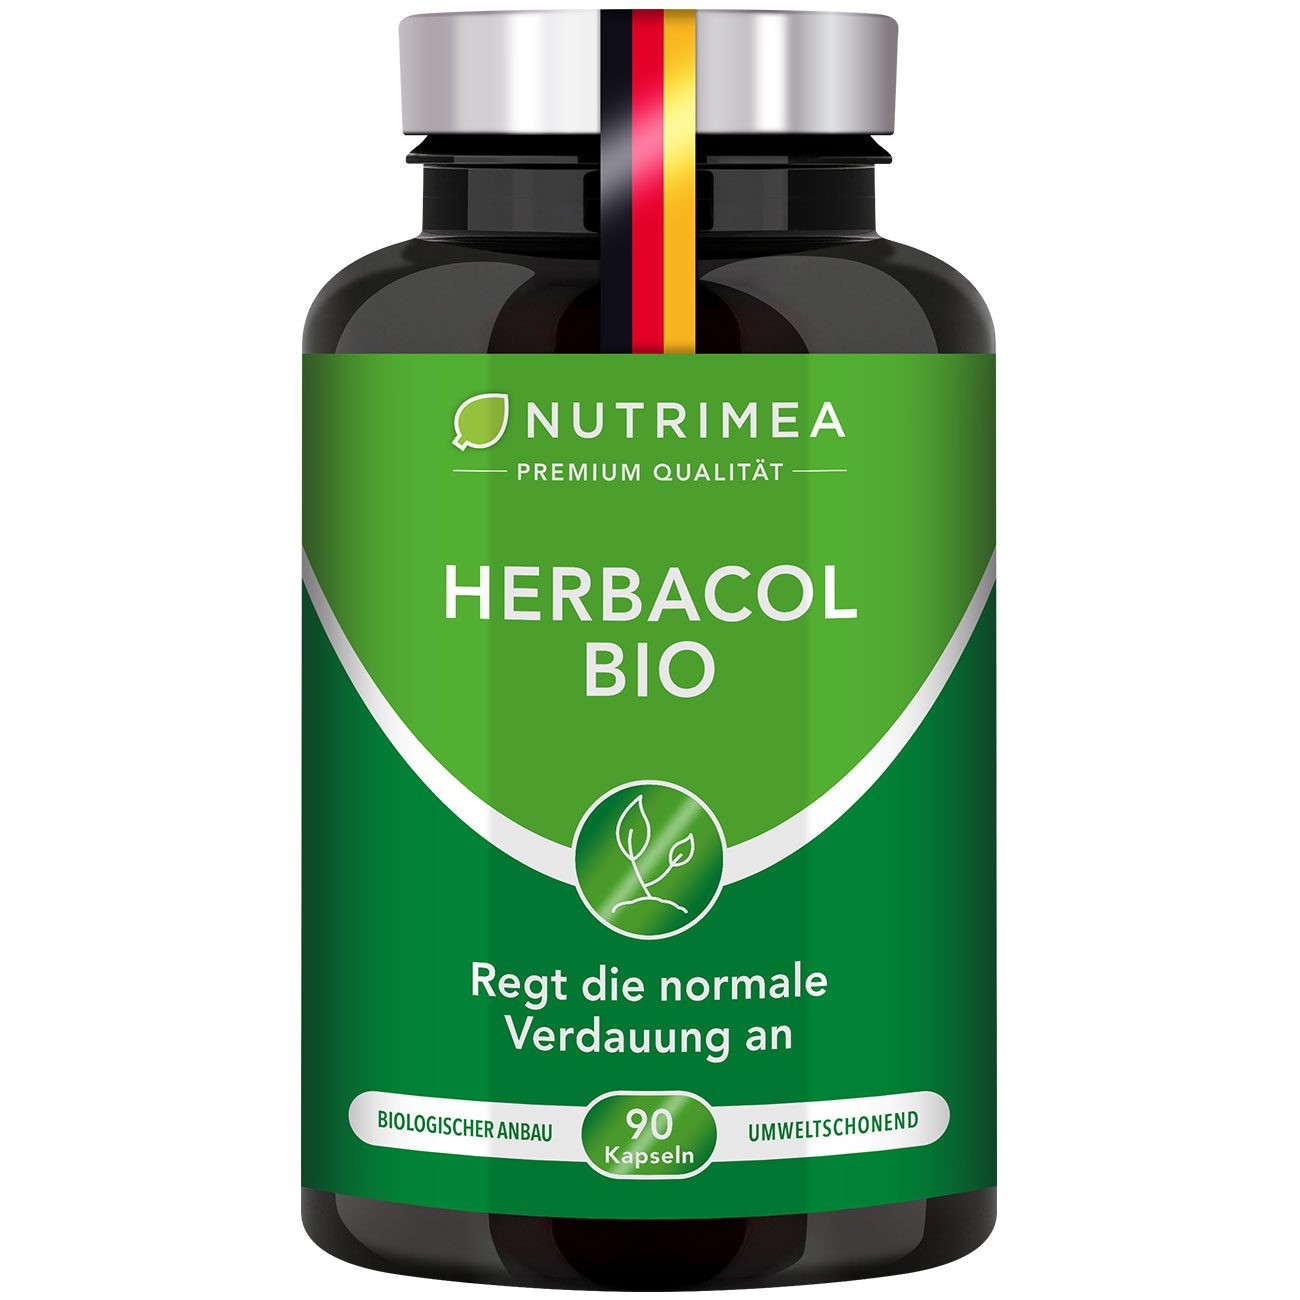 Bild des Nahrungsergänzungsmittels Herbacol BIO